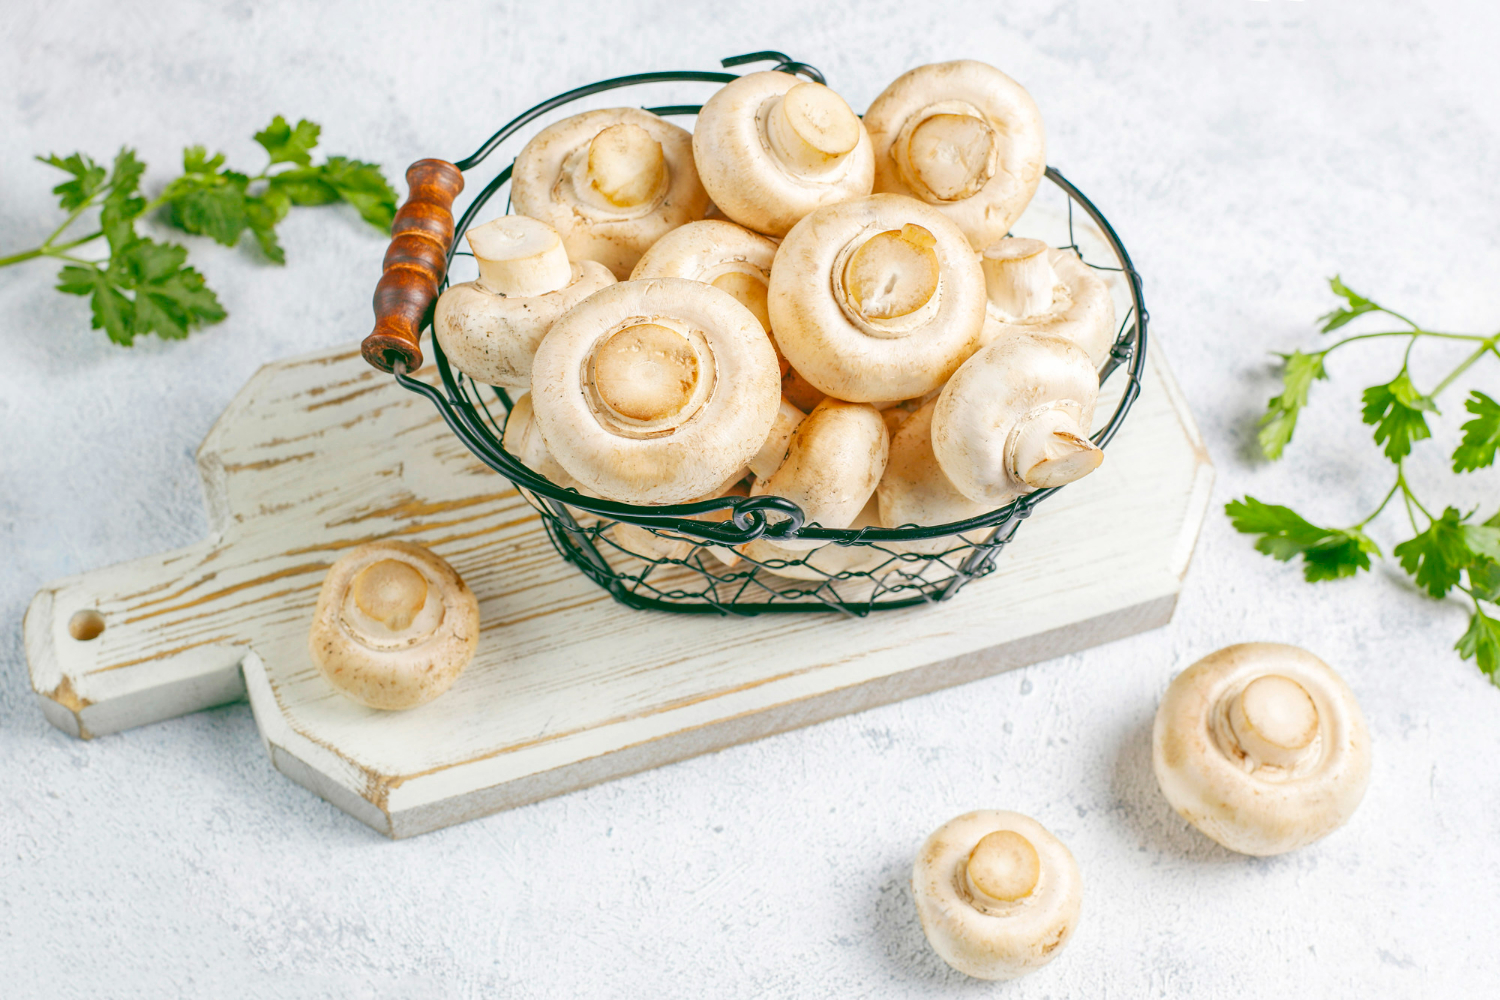 Как правильно готовить грибы и почему их мыть не стоит. Фото © Freepik / azerbaijan-stockers